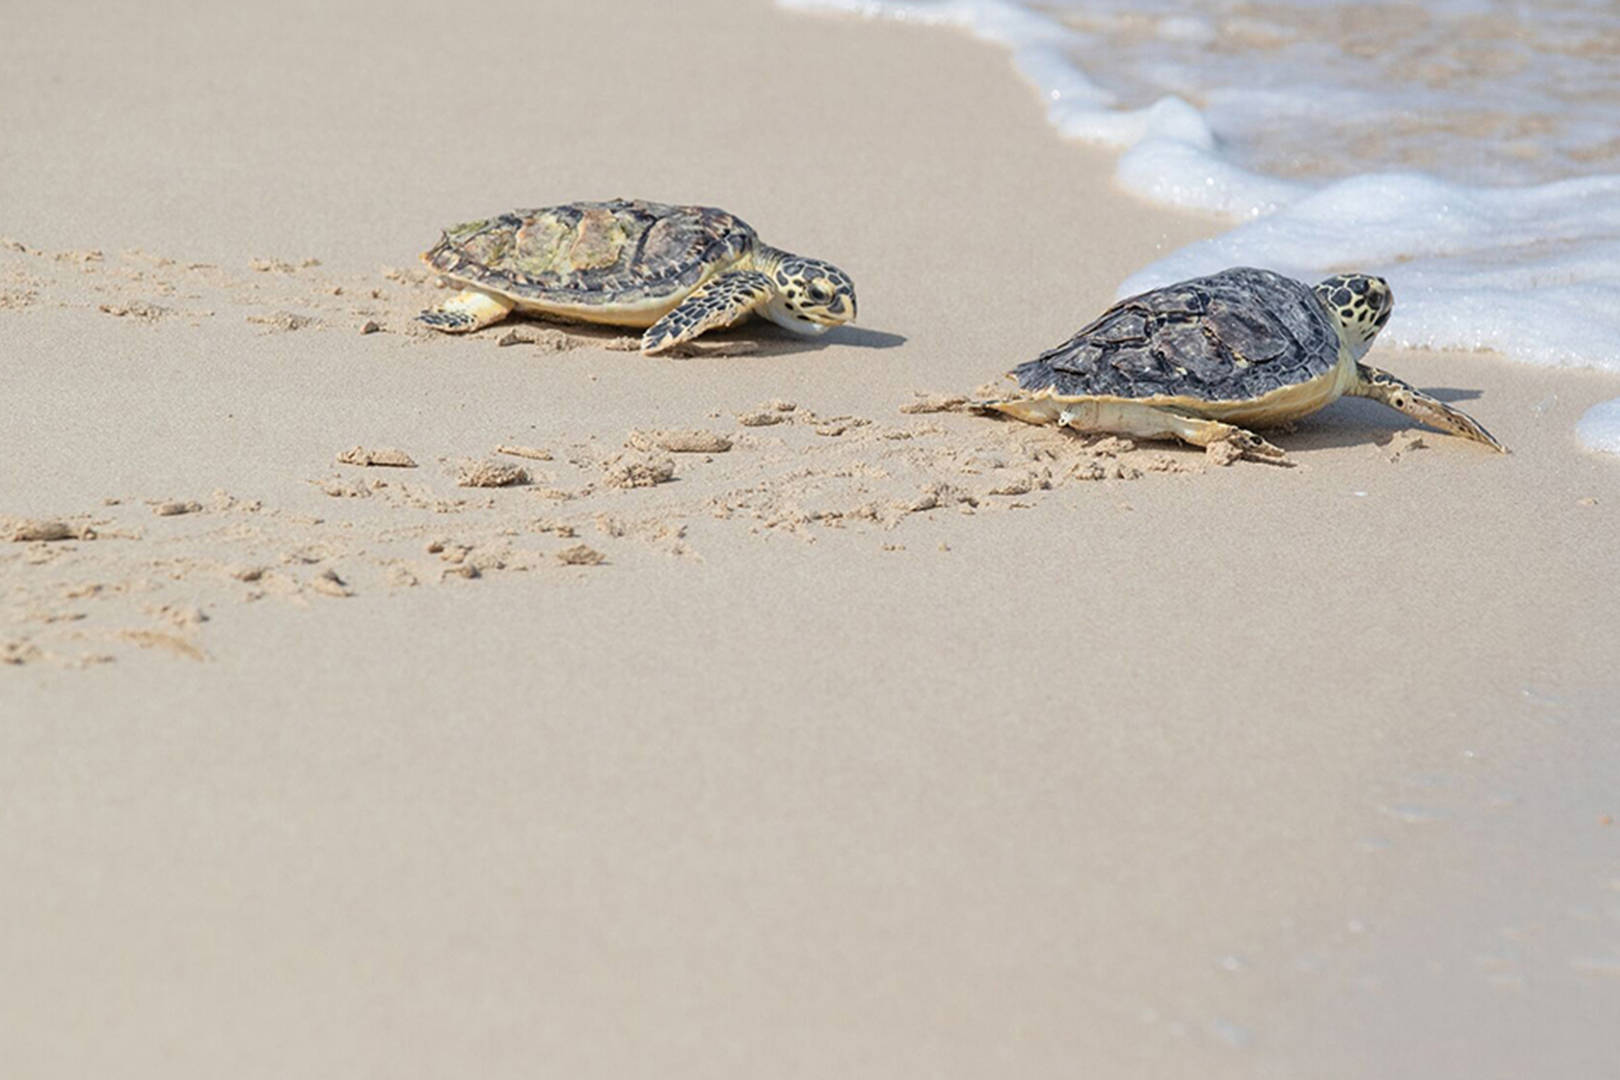 Mini Turtles – The Botanist Dubai